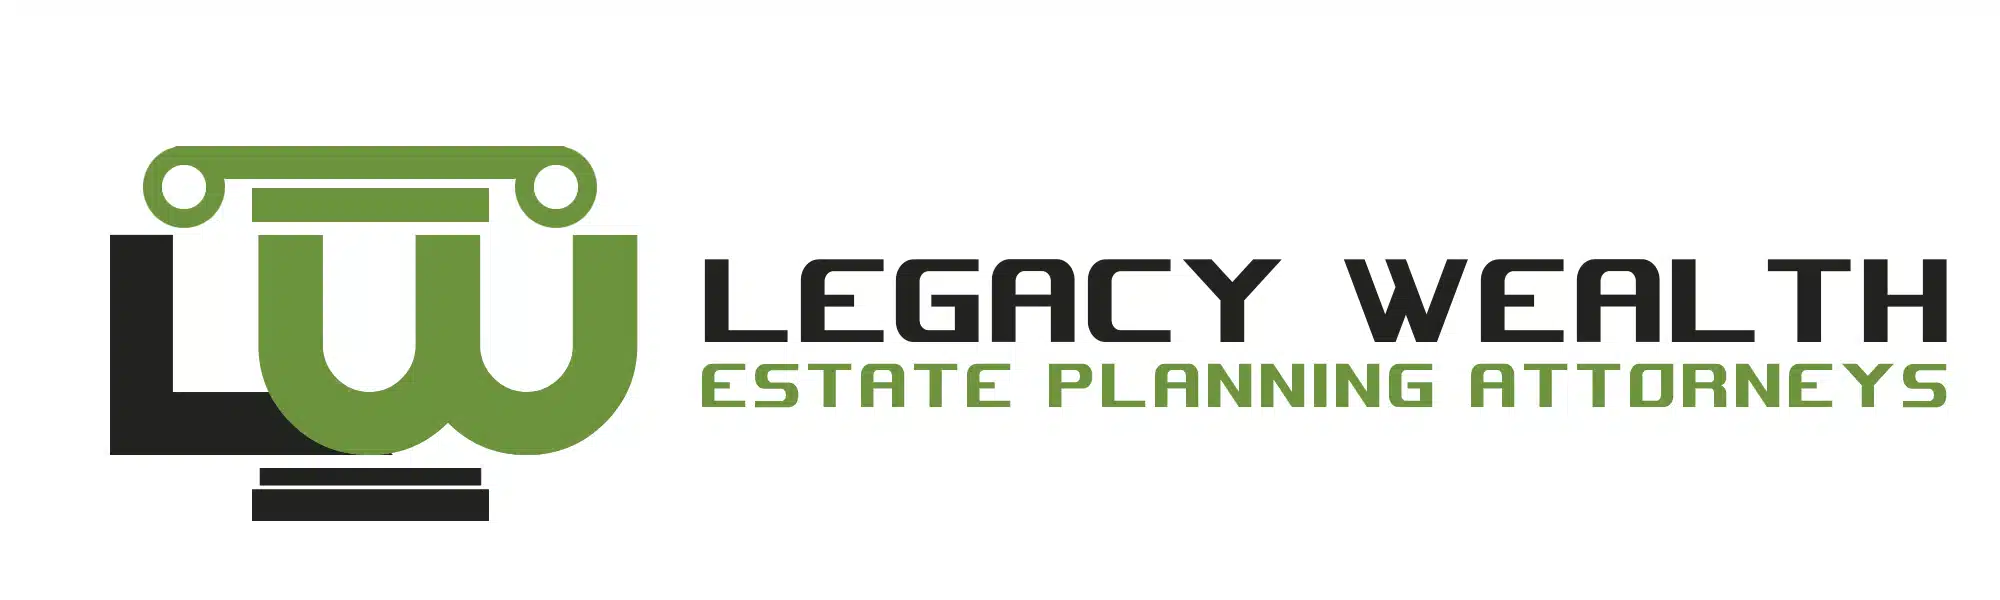 Legacy-Wealth-8.webp